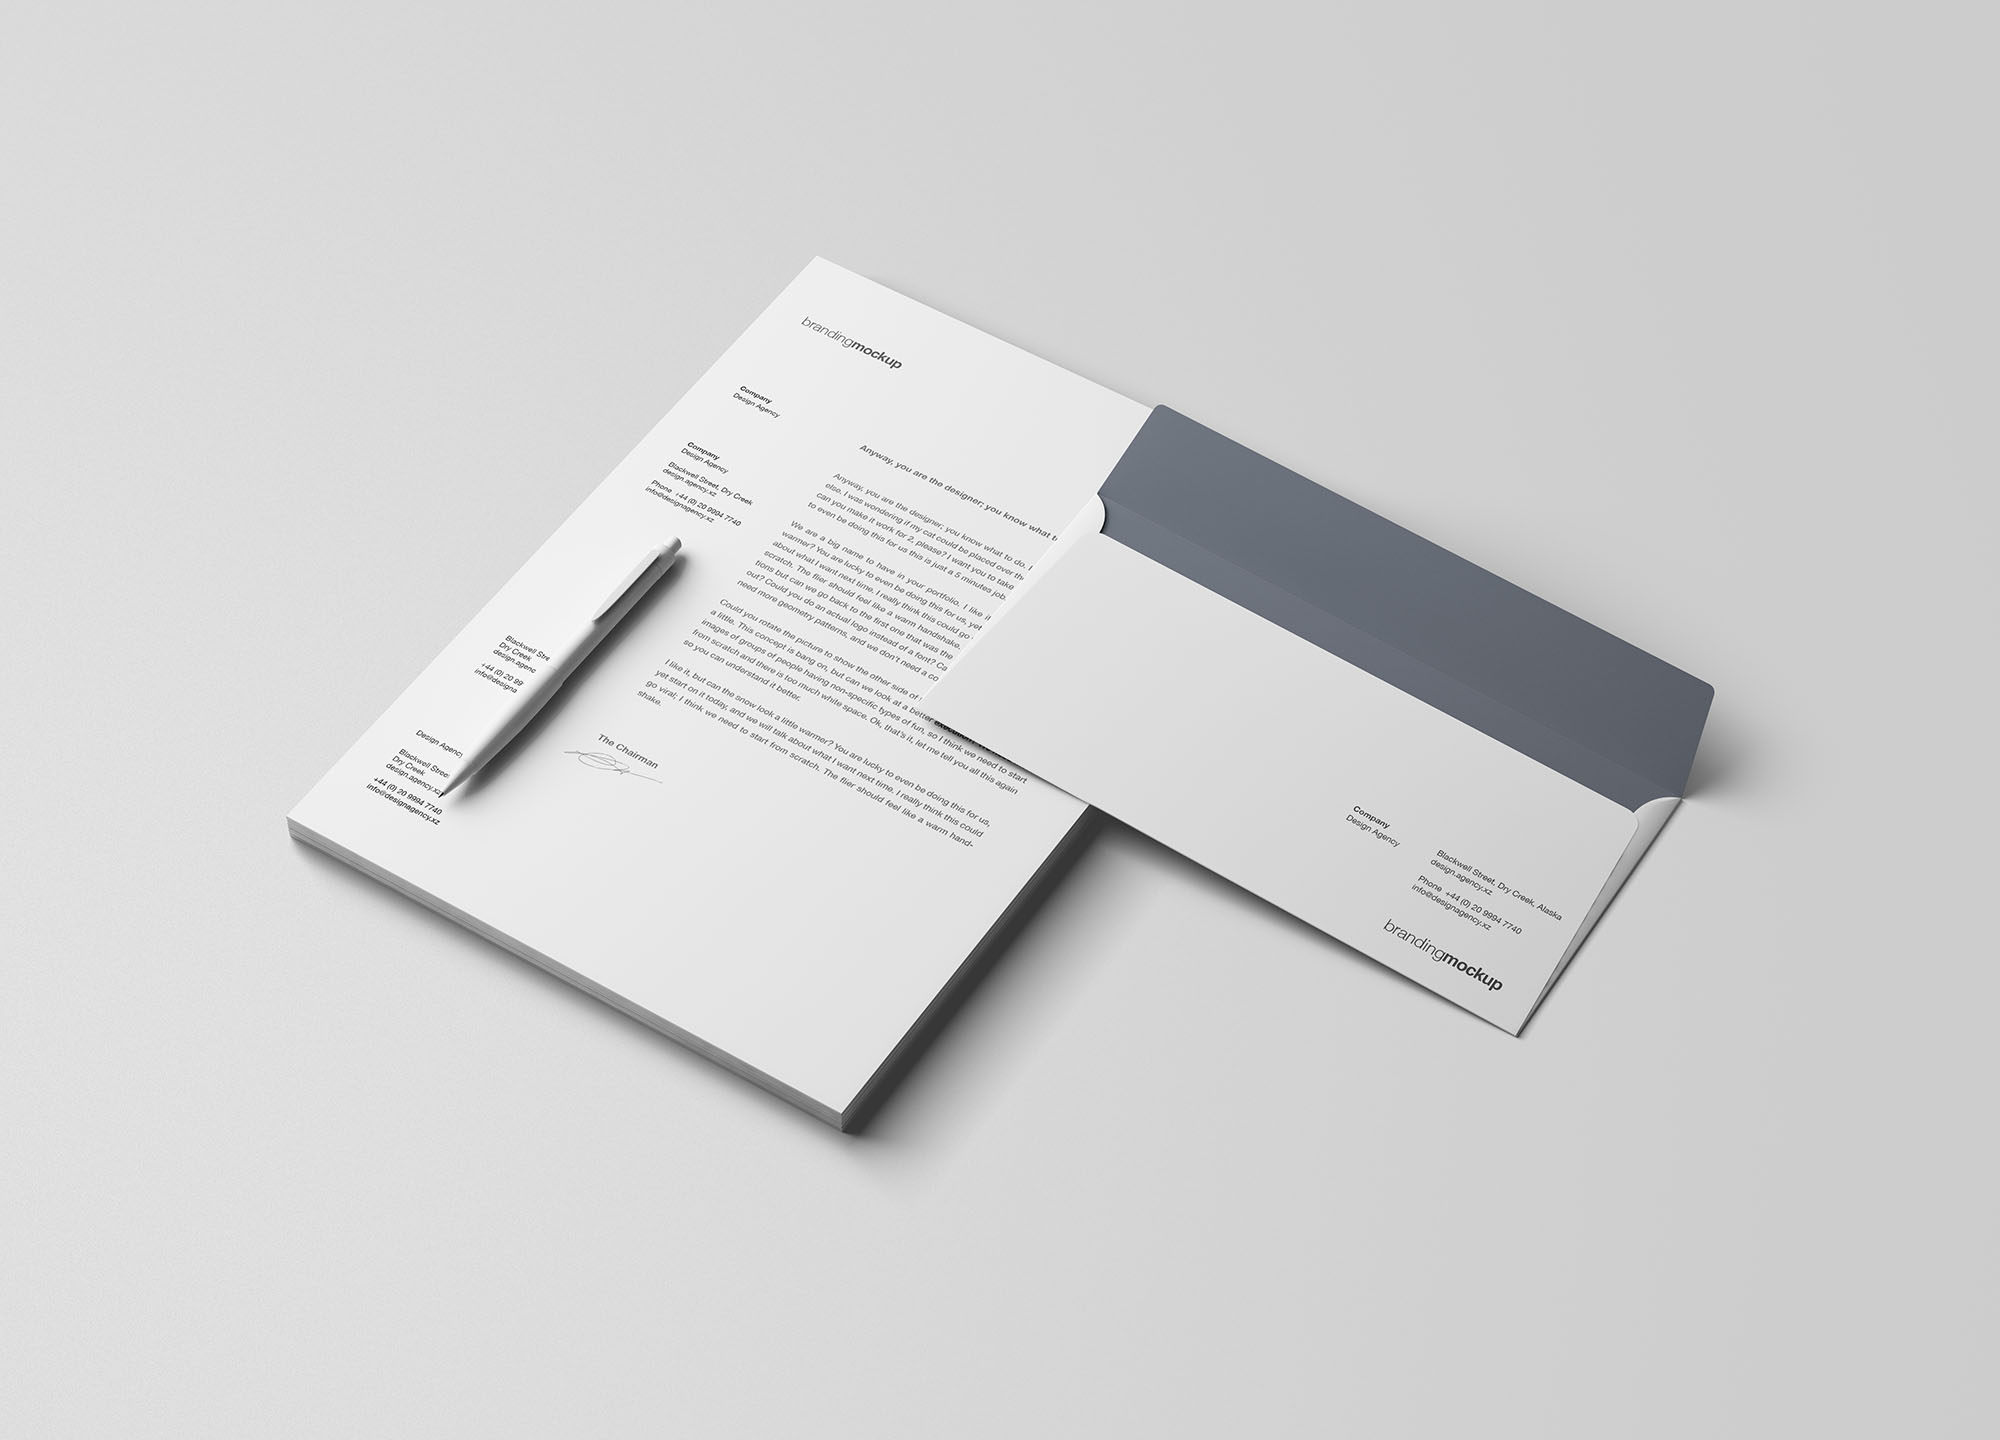 信笺和信封设计品牌样机PSD模板 Letterhead and Envelope Branding Mockup (PSD)插图